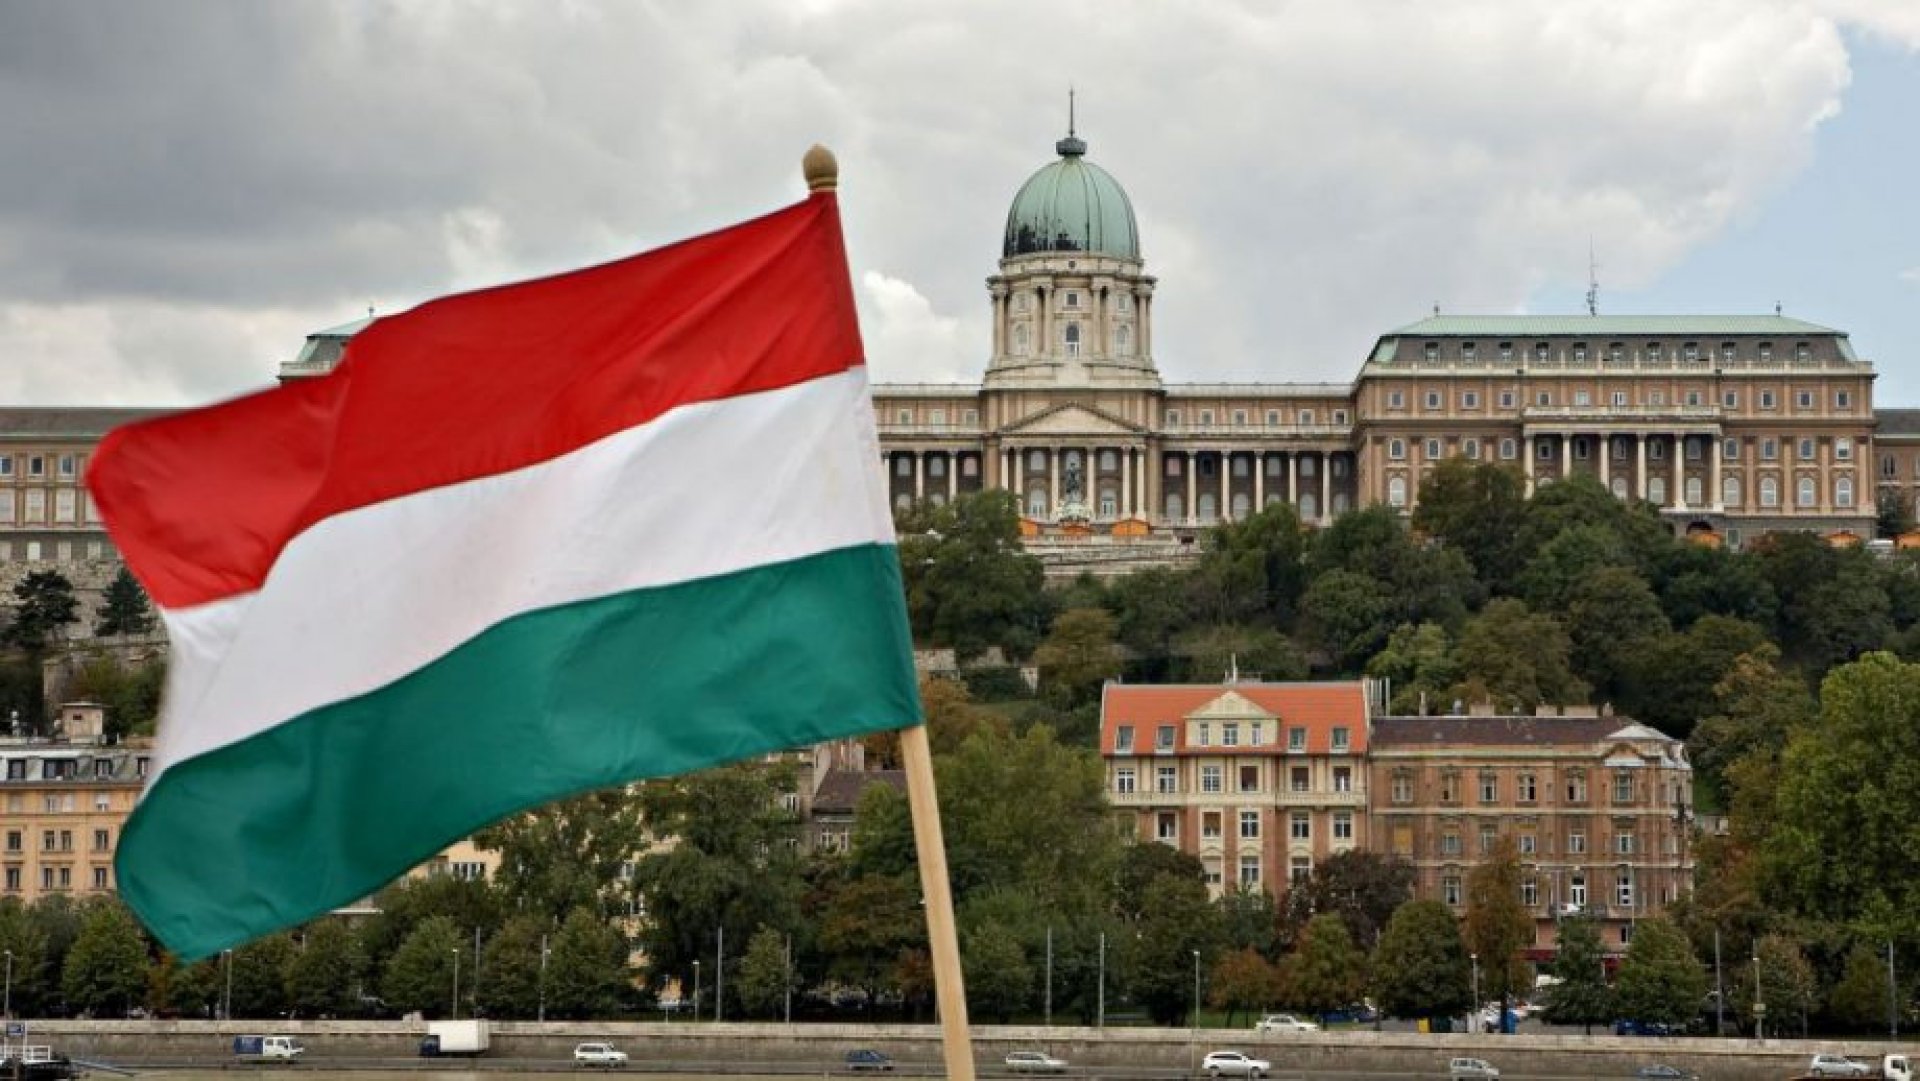 ungaria-va-plasa-din-nou-migrantii-in-detentie-29109-920x518_87441600